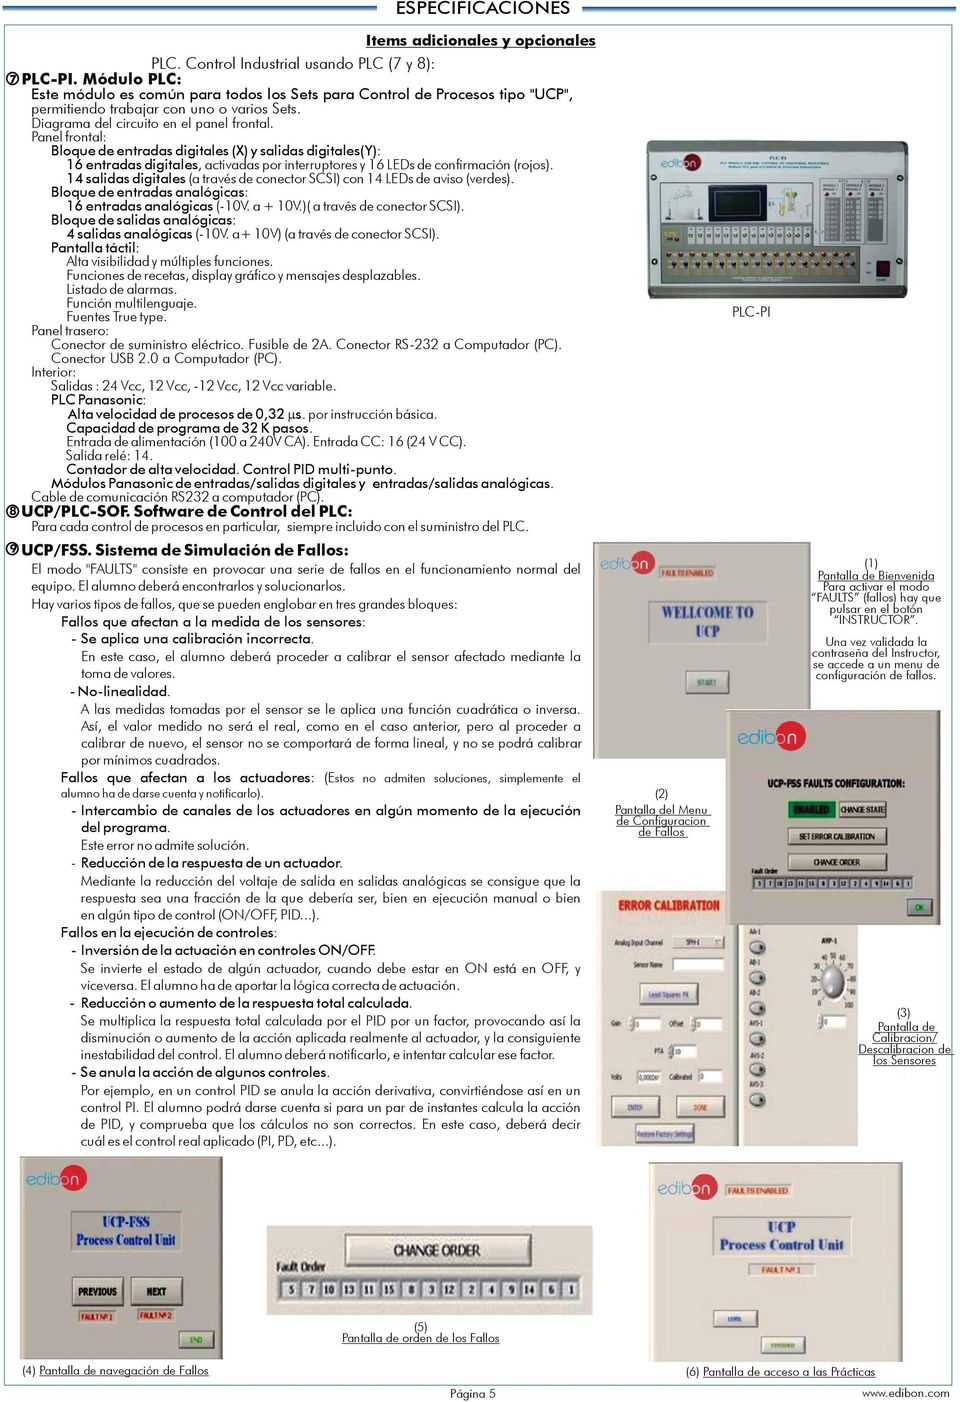 14 salidas digitales (a través de conector SCSI) con 14 LEDs de aviso (verdes). Bloque de entradas analógicas: 16 entradas analógicas (-10V. a 10V.)( a través de conector SCSI).